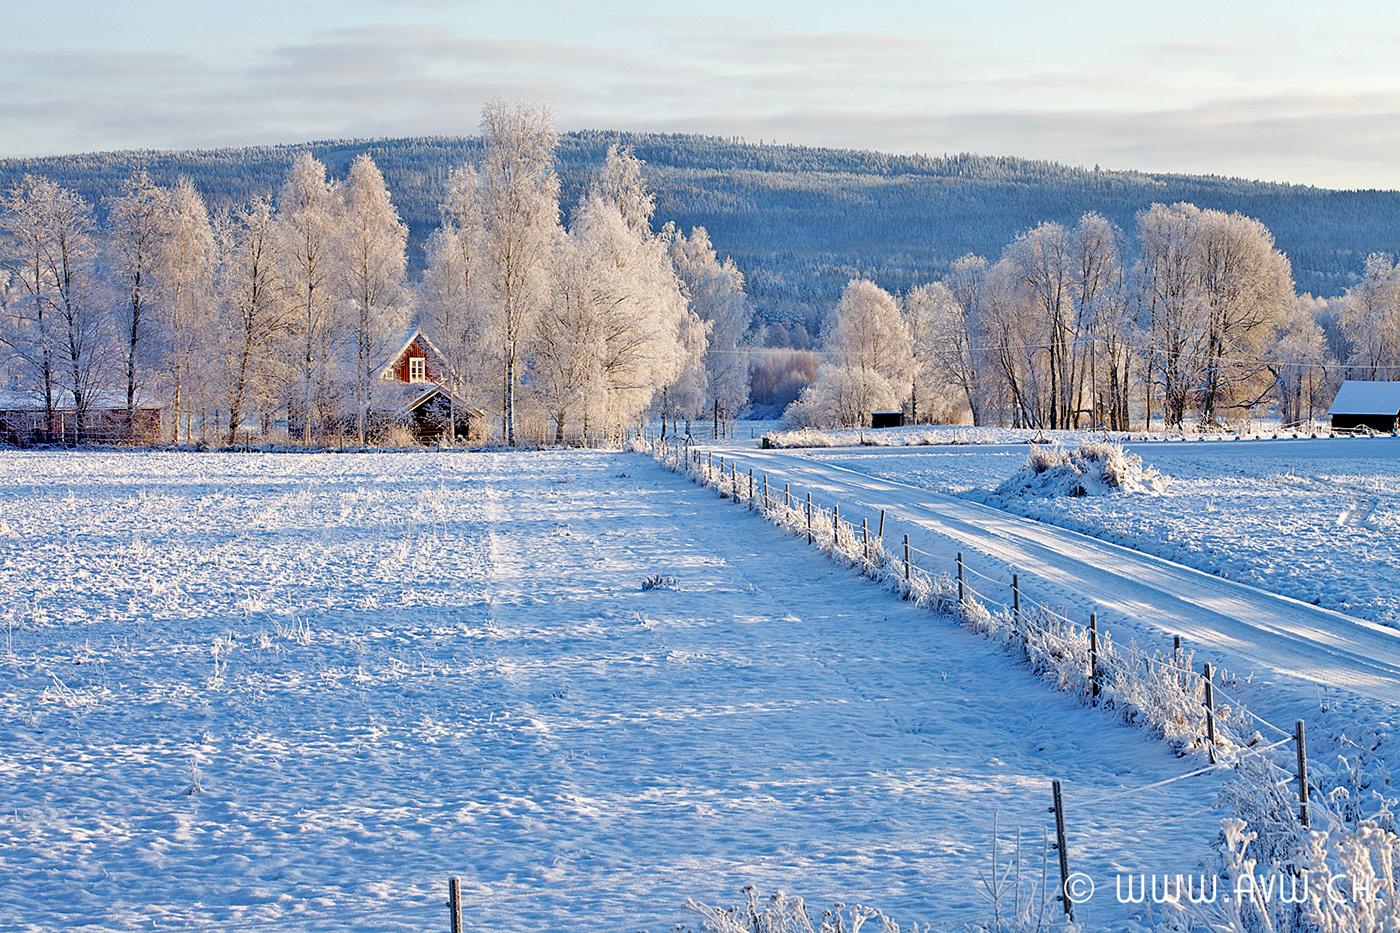 Travel photo REISEN värmland schweden Nature Landscape natur Landschaft winter